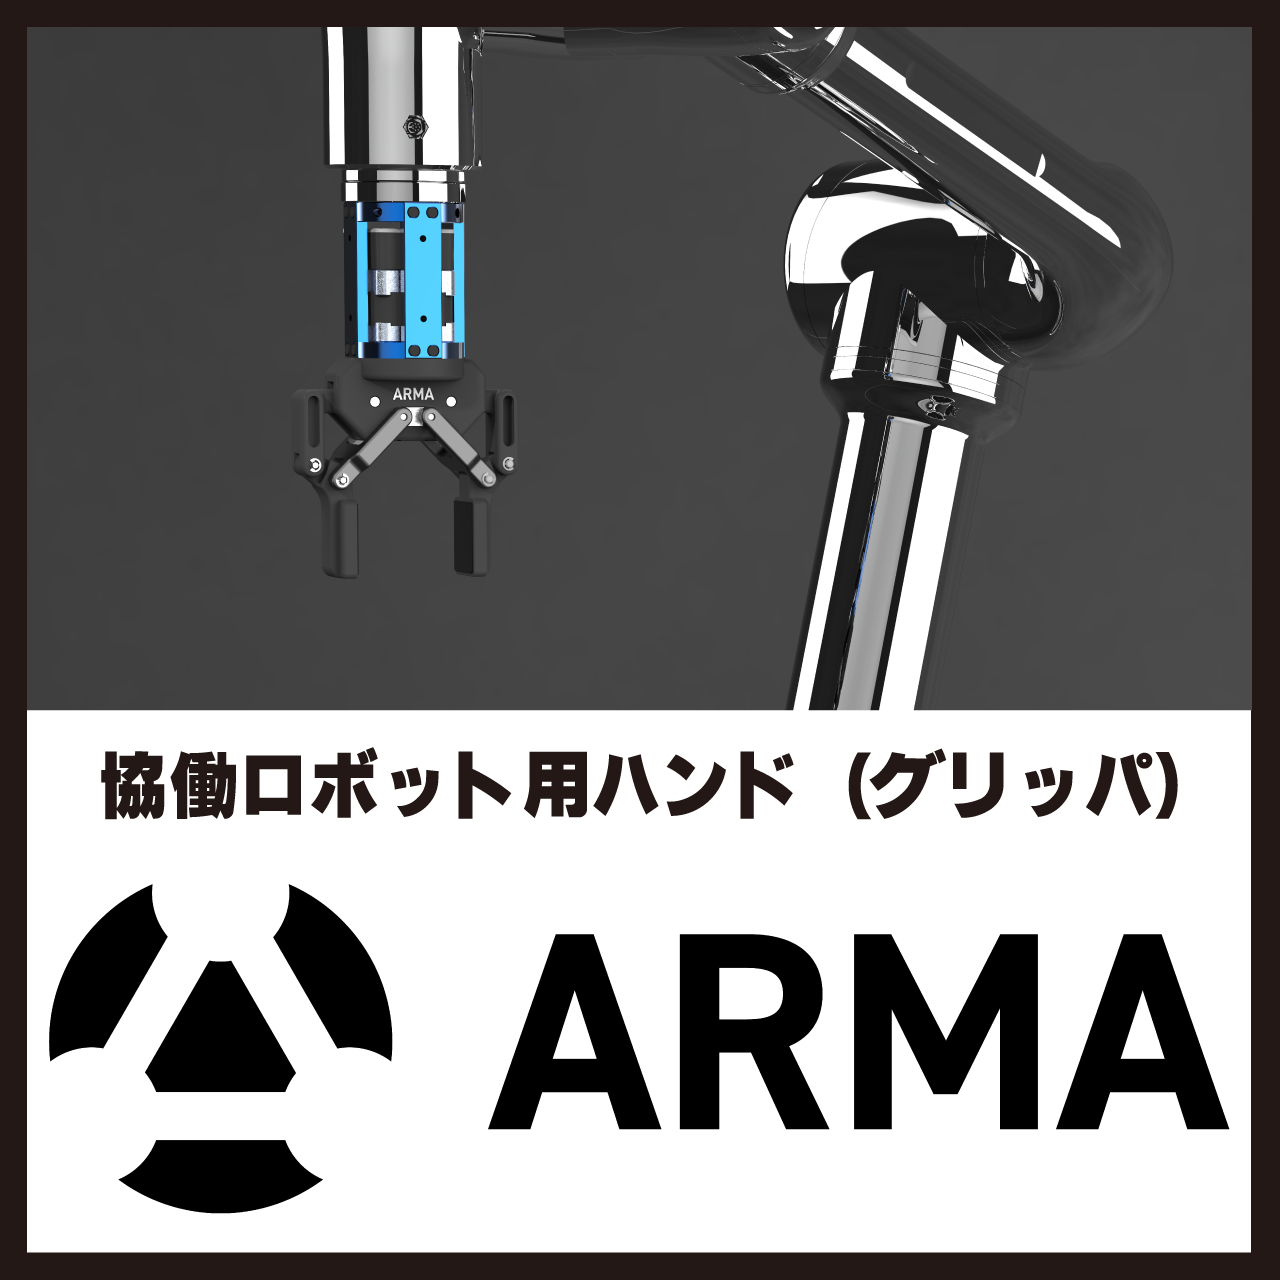 協働ロボット用グリッパ「ARMA」